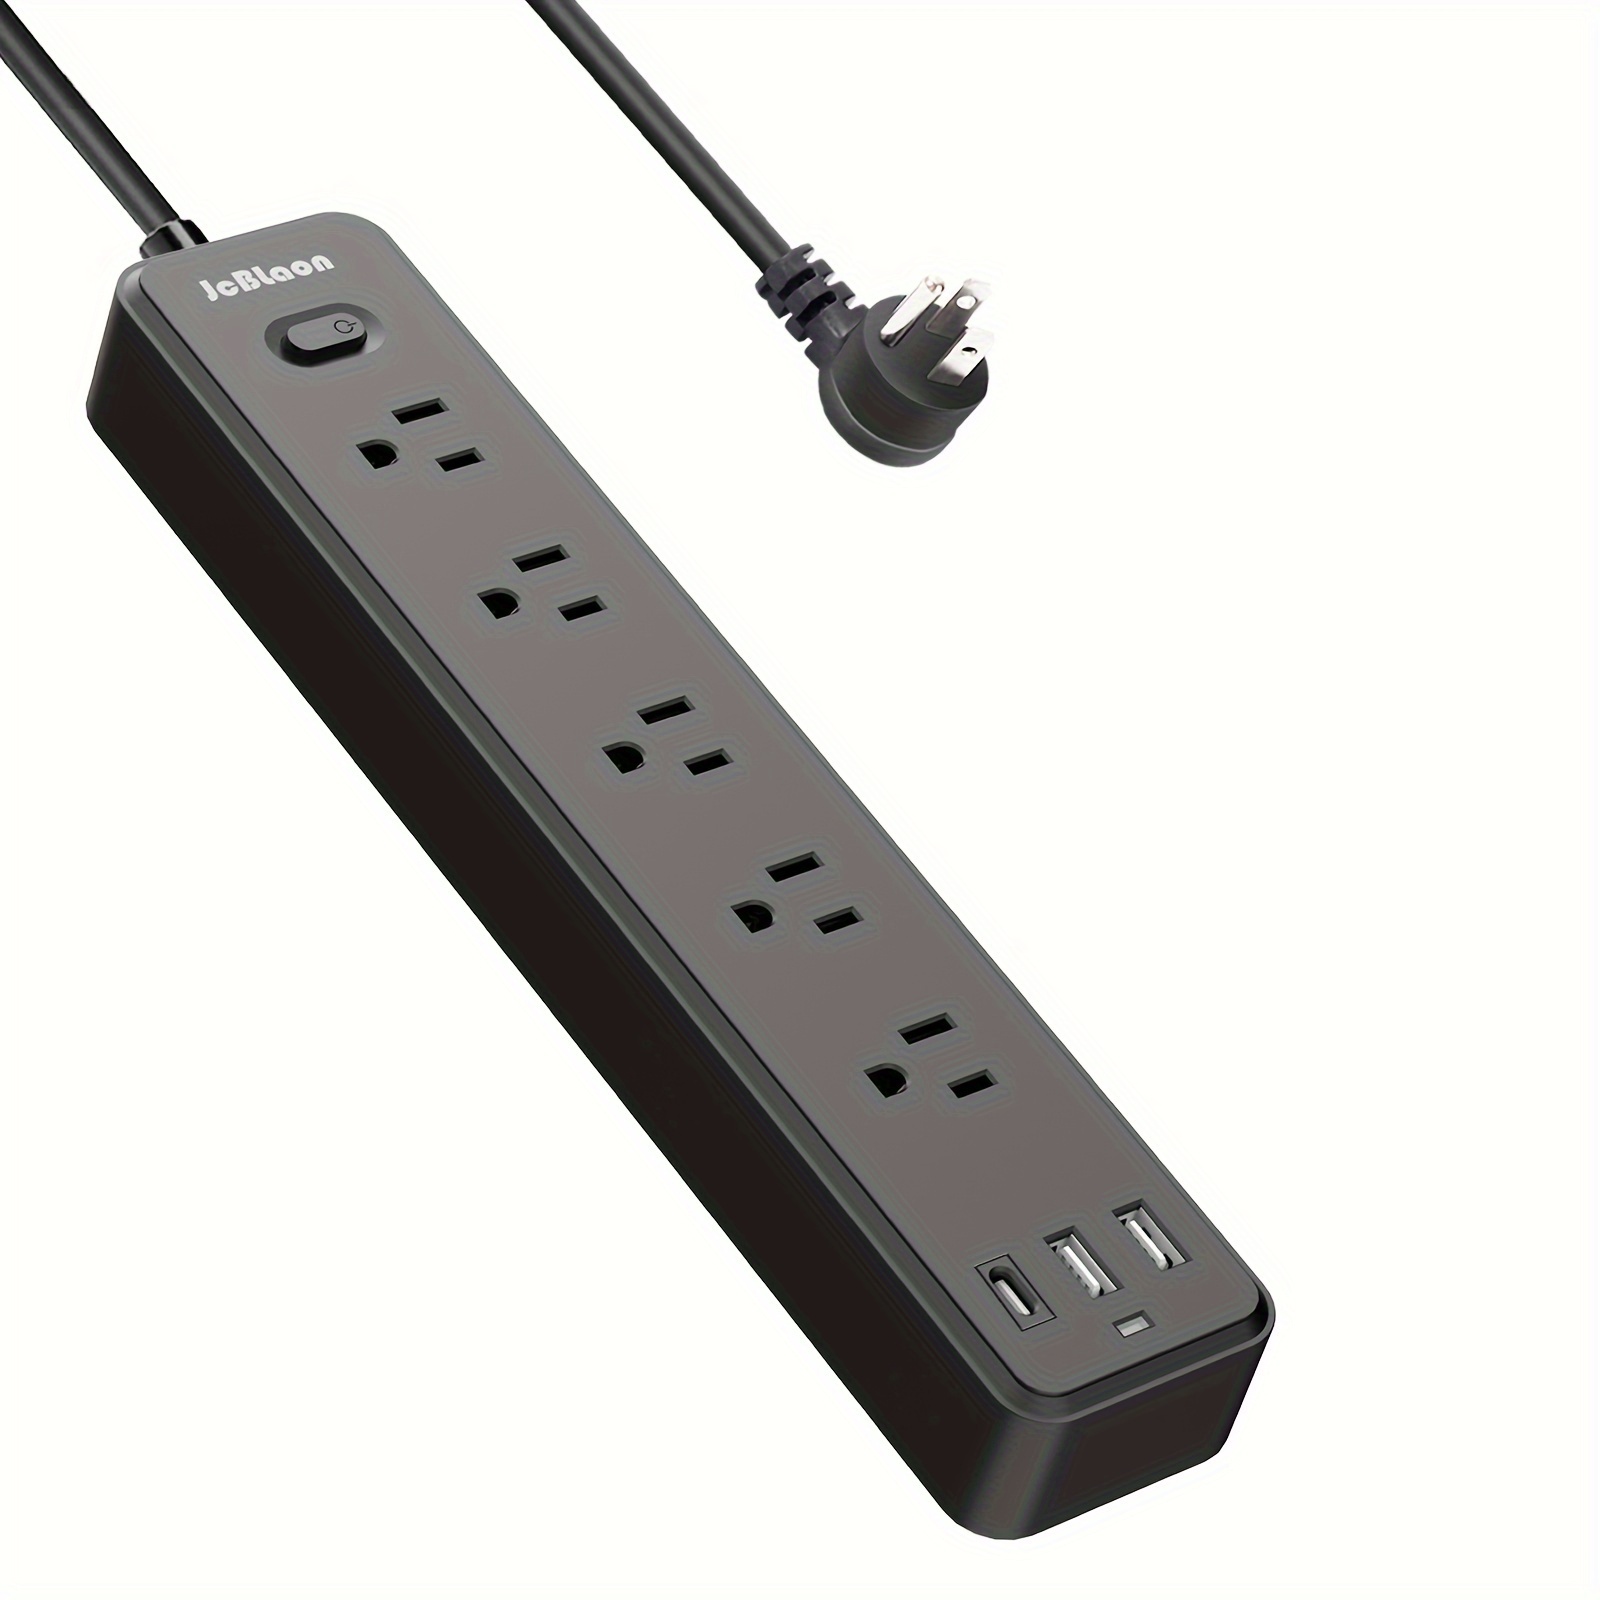  Regleta de alimentación de enchufe plano, cable de extensión  plano ultrafino de 10 pies con múltiples tomas, 6 tomas, 3 puertos USB (1  USB C), regleta de alimentación de crucero sin